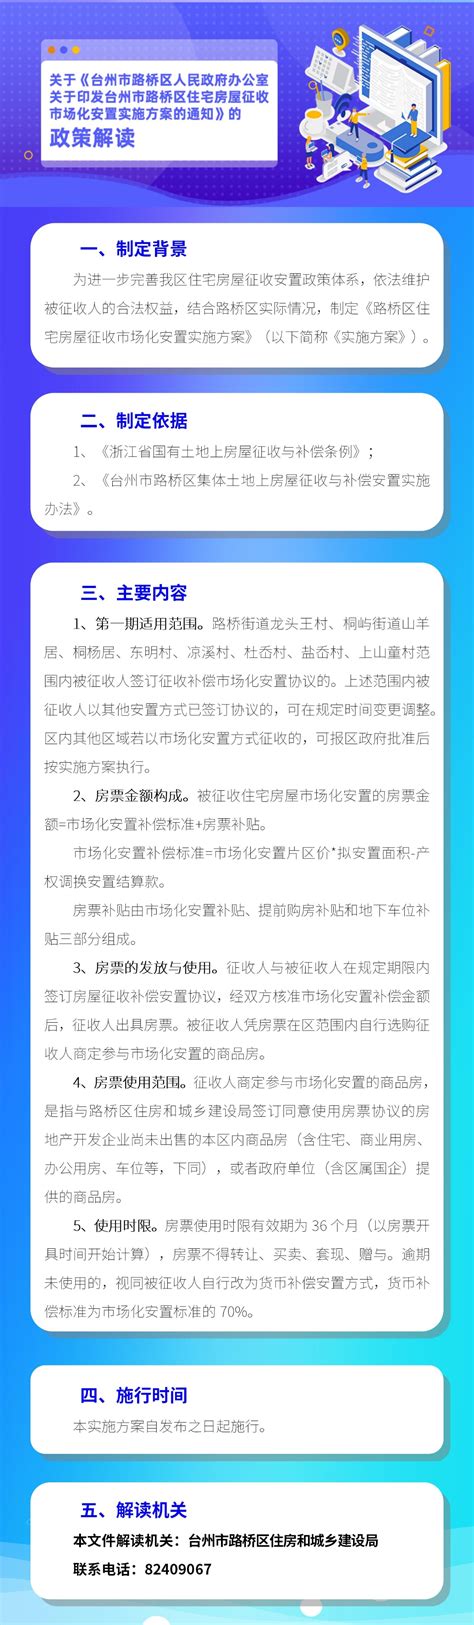 【政策解读】《台州市路桥区人民政府办公室关于加强工程采矿管理的通知》 路政办发〔2023〕3号